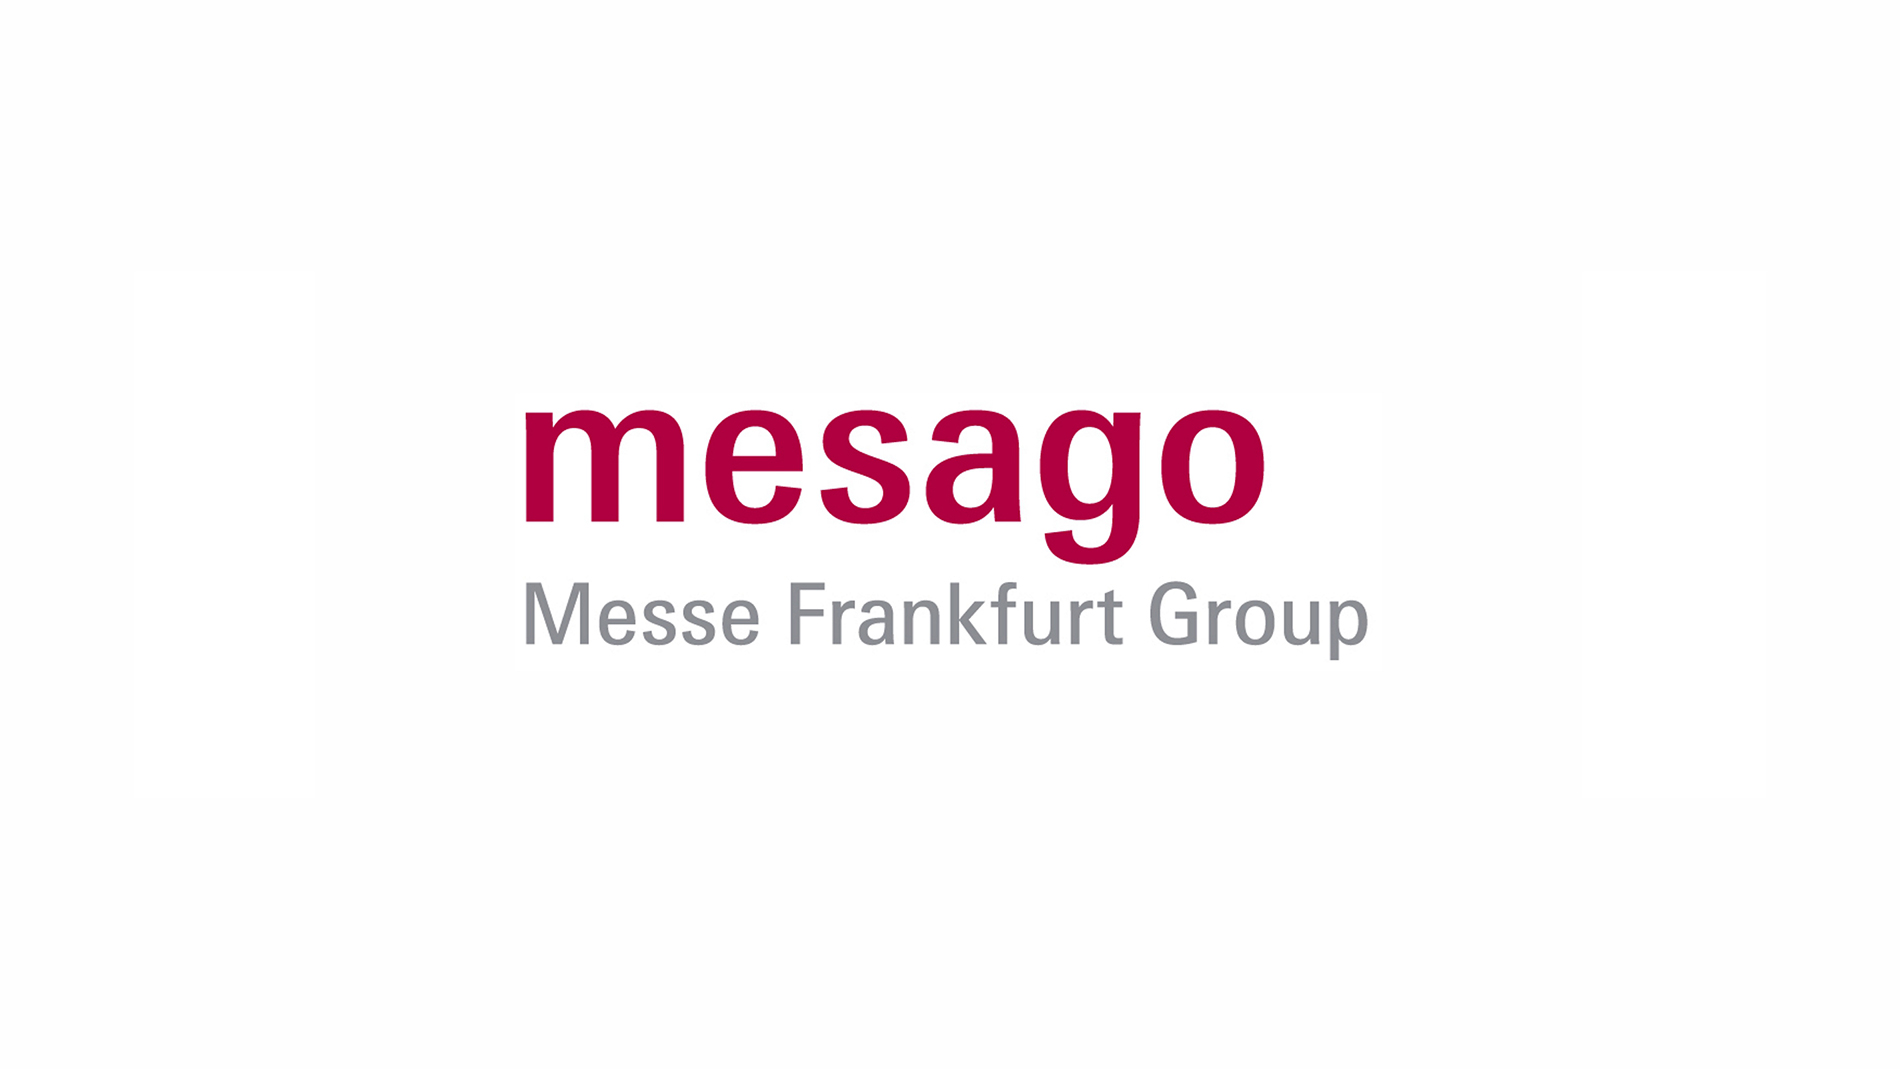 Gesamtprogramm der Mesago Messe Frankfurt GmbH